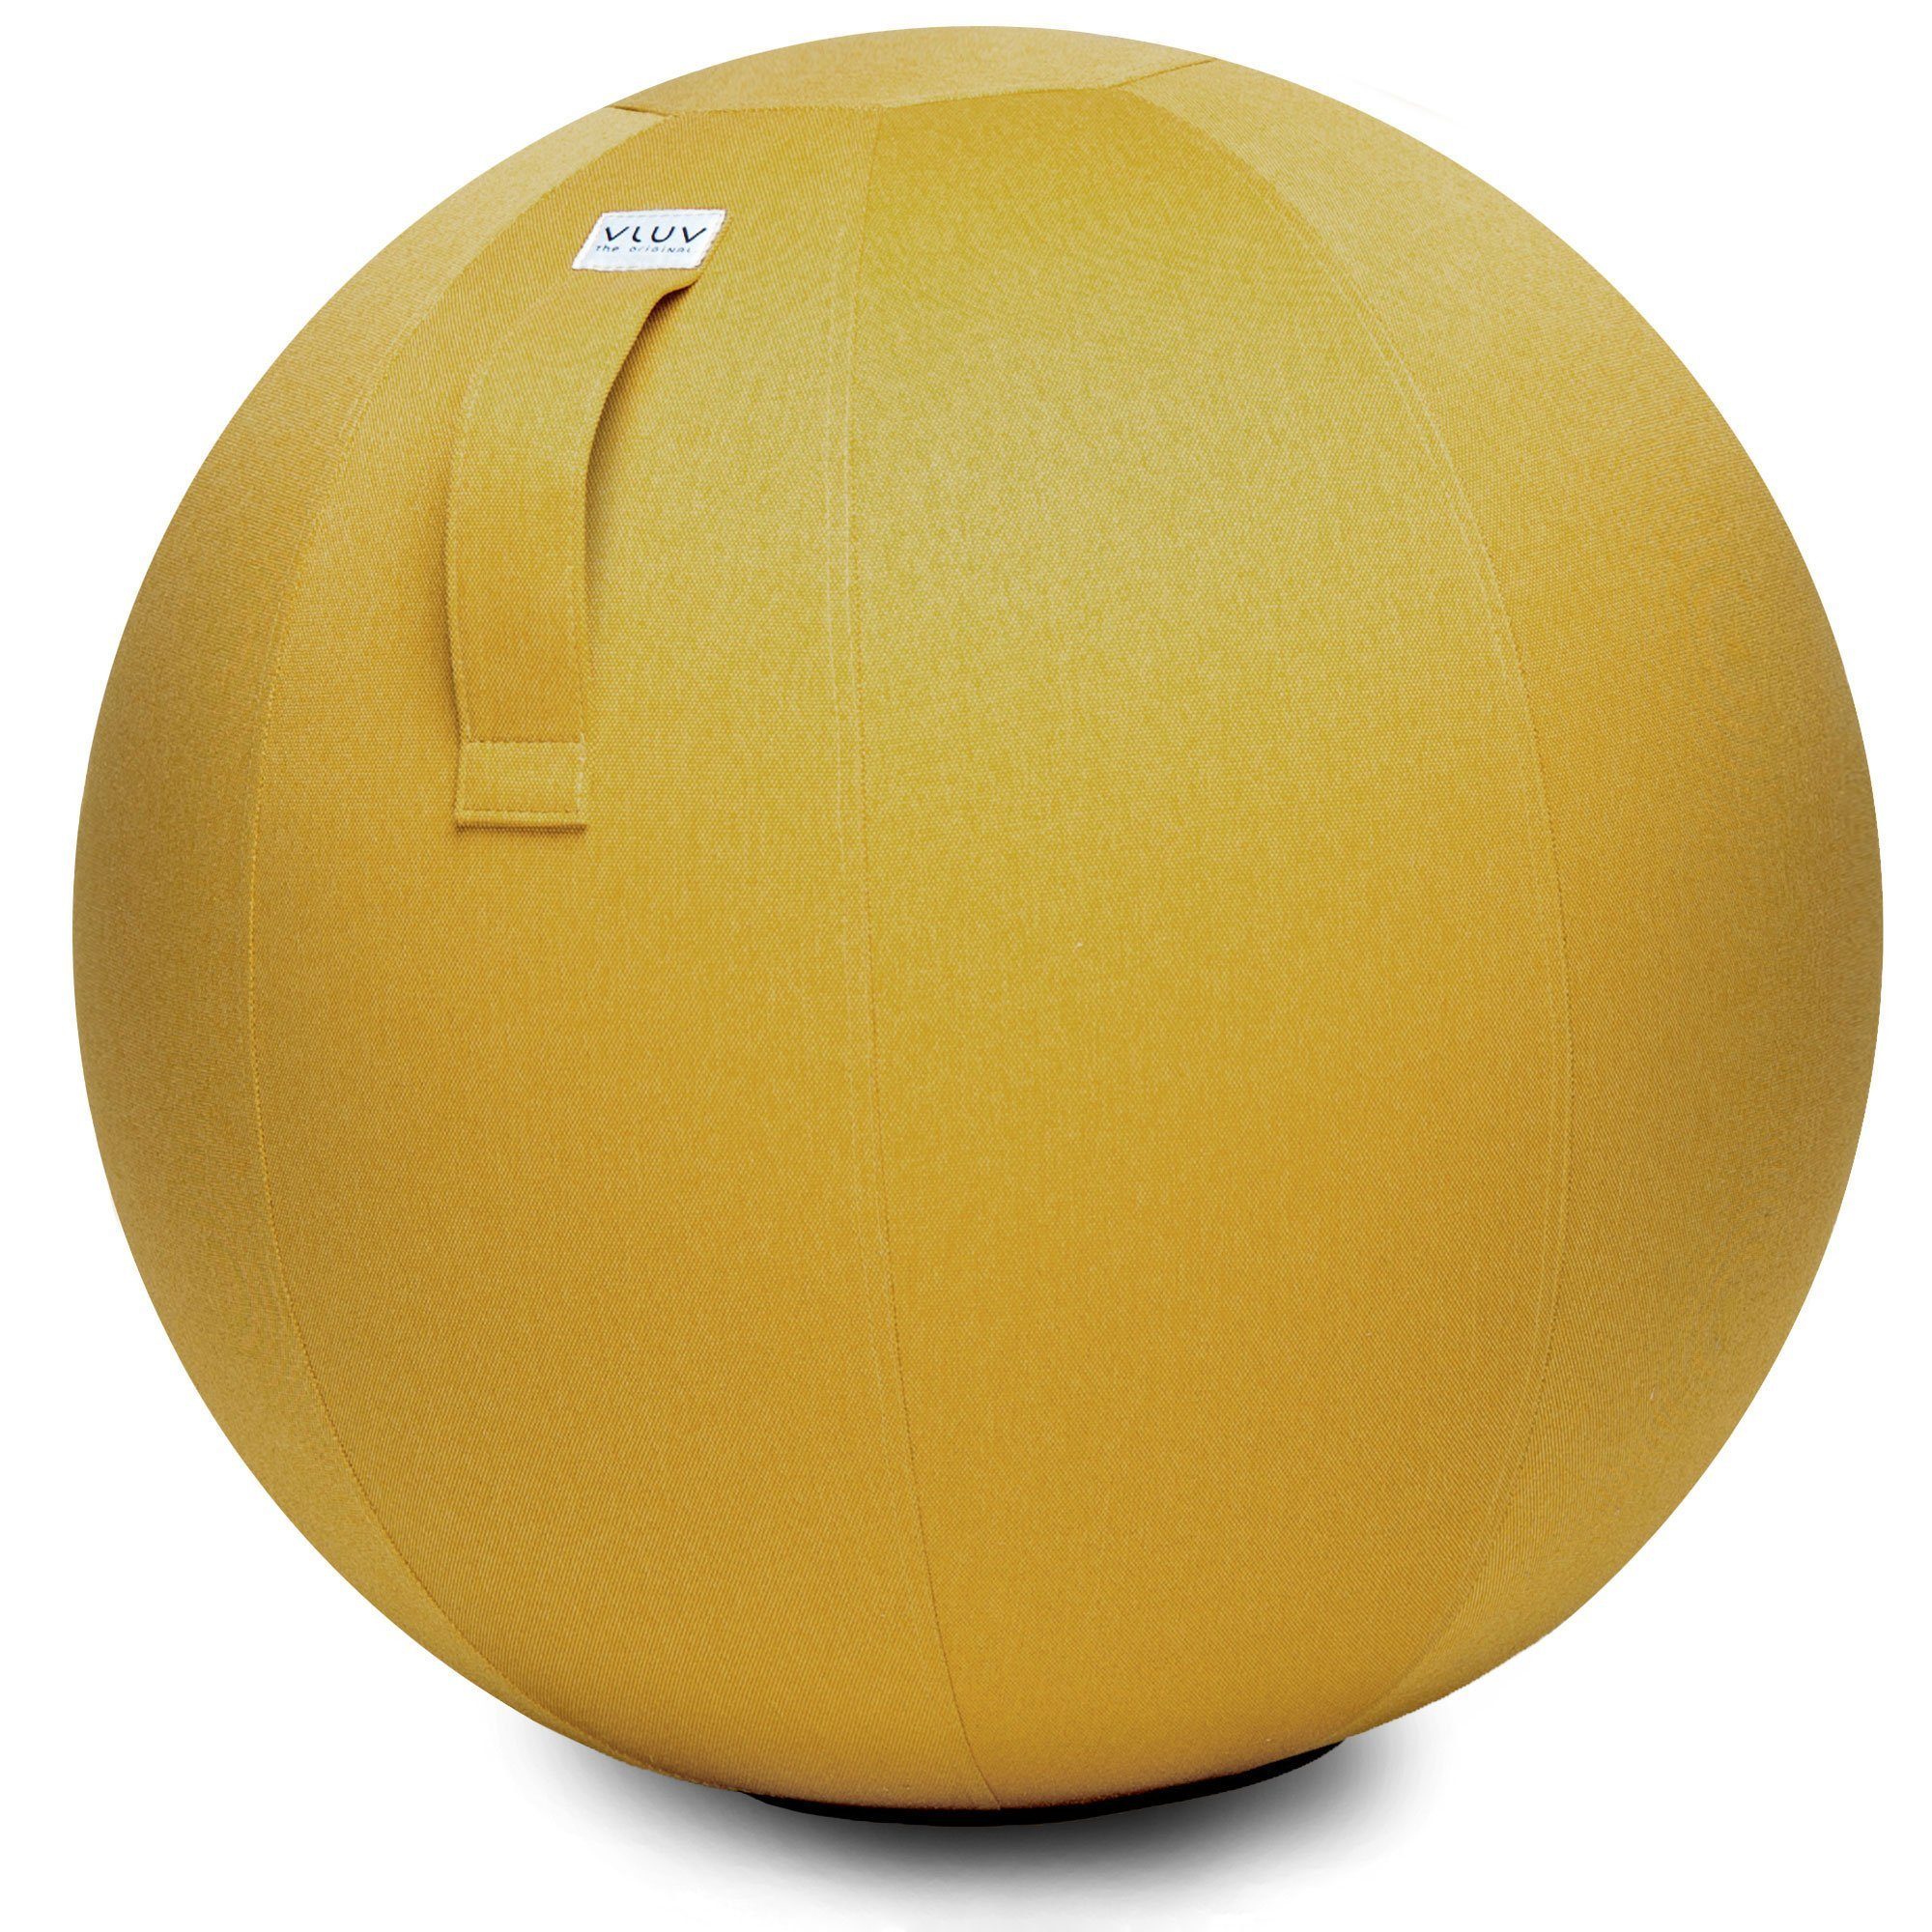 VLUV Sitzball BOL LEIV Stoff-Sitzball, ergonomisches Sitzmöbel für Büro und Zuhause, Farbe: Mustard (senfgelb), Ø 60cm - 65cm, Möbelbezugsstoff, robust und formstabil, mit Tragegriff